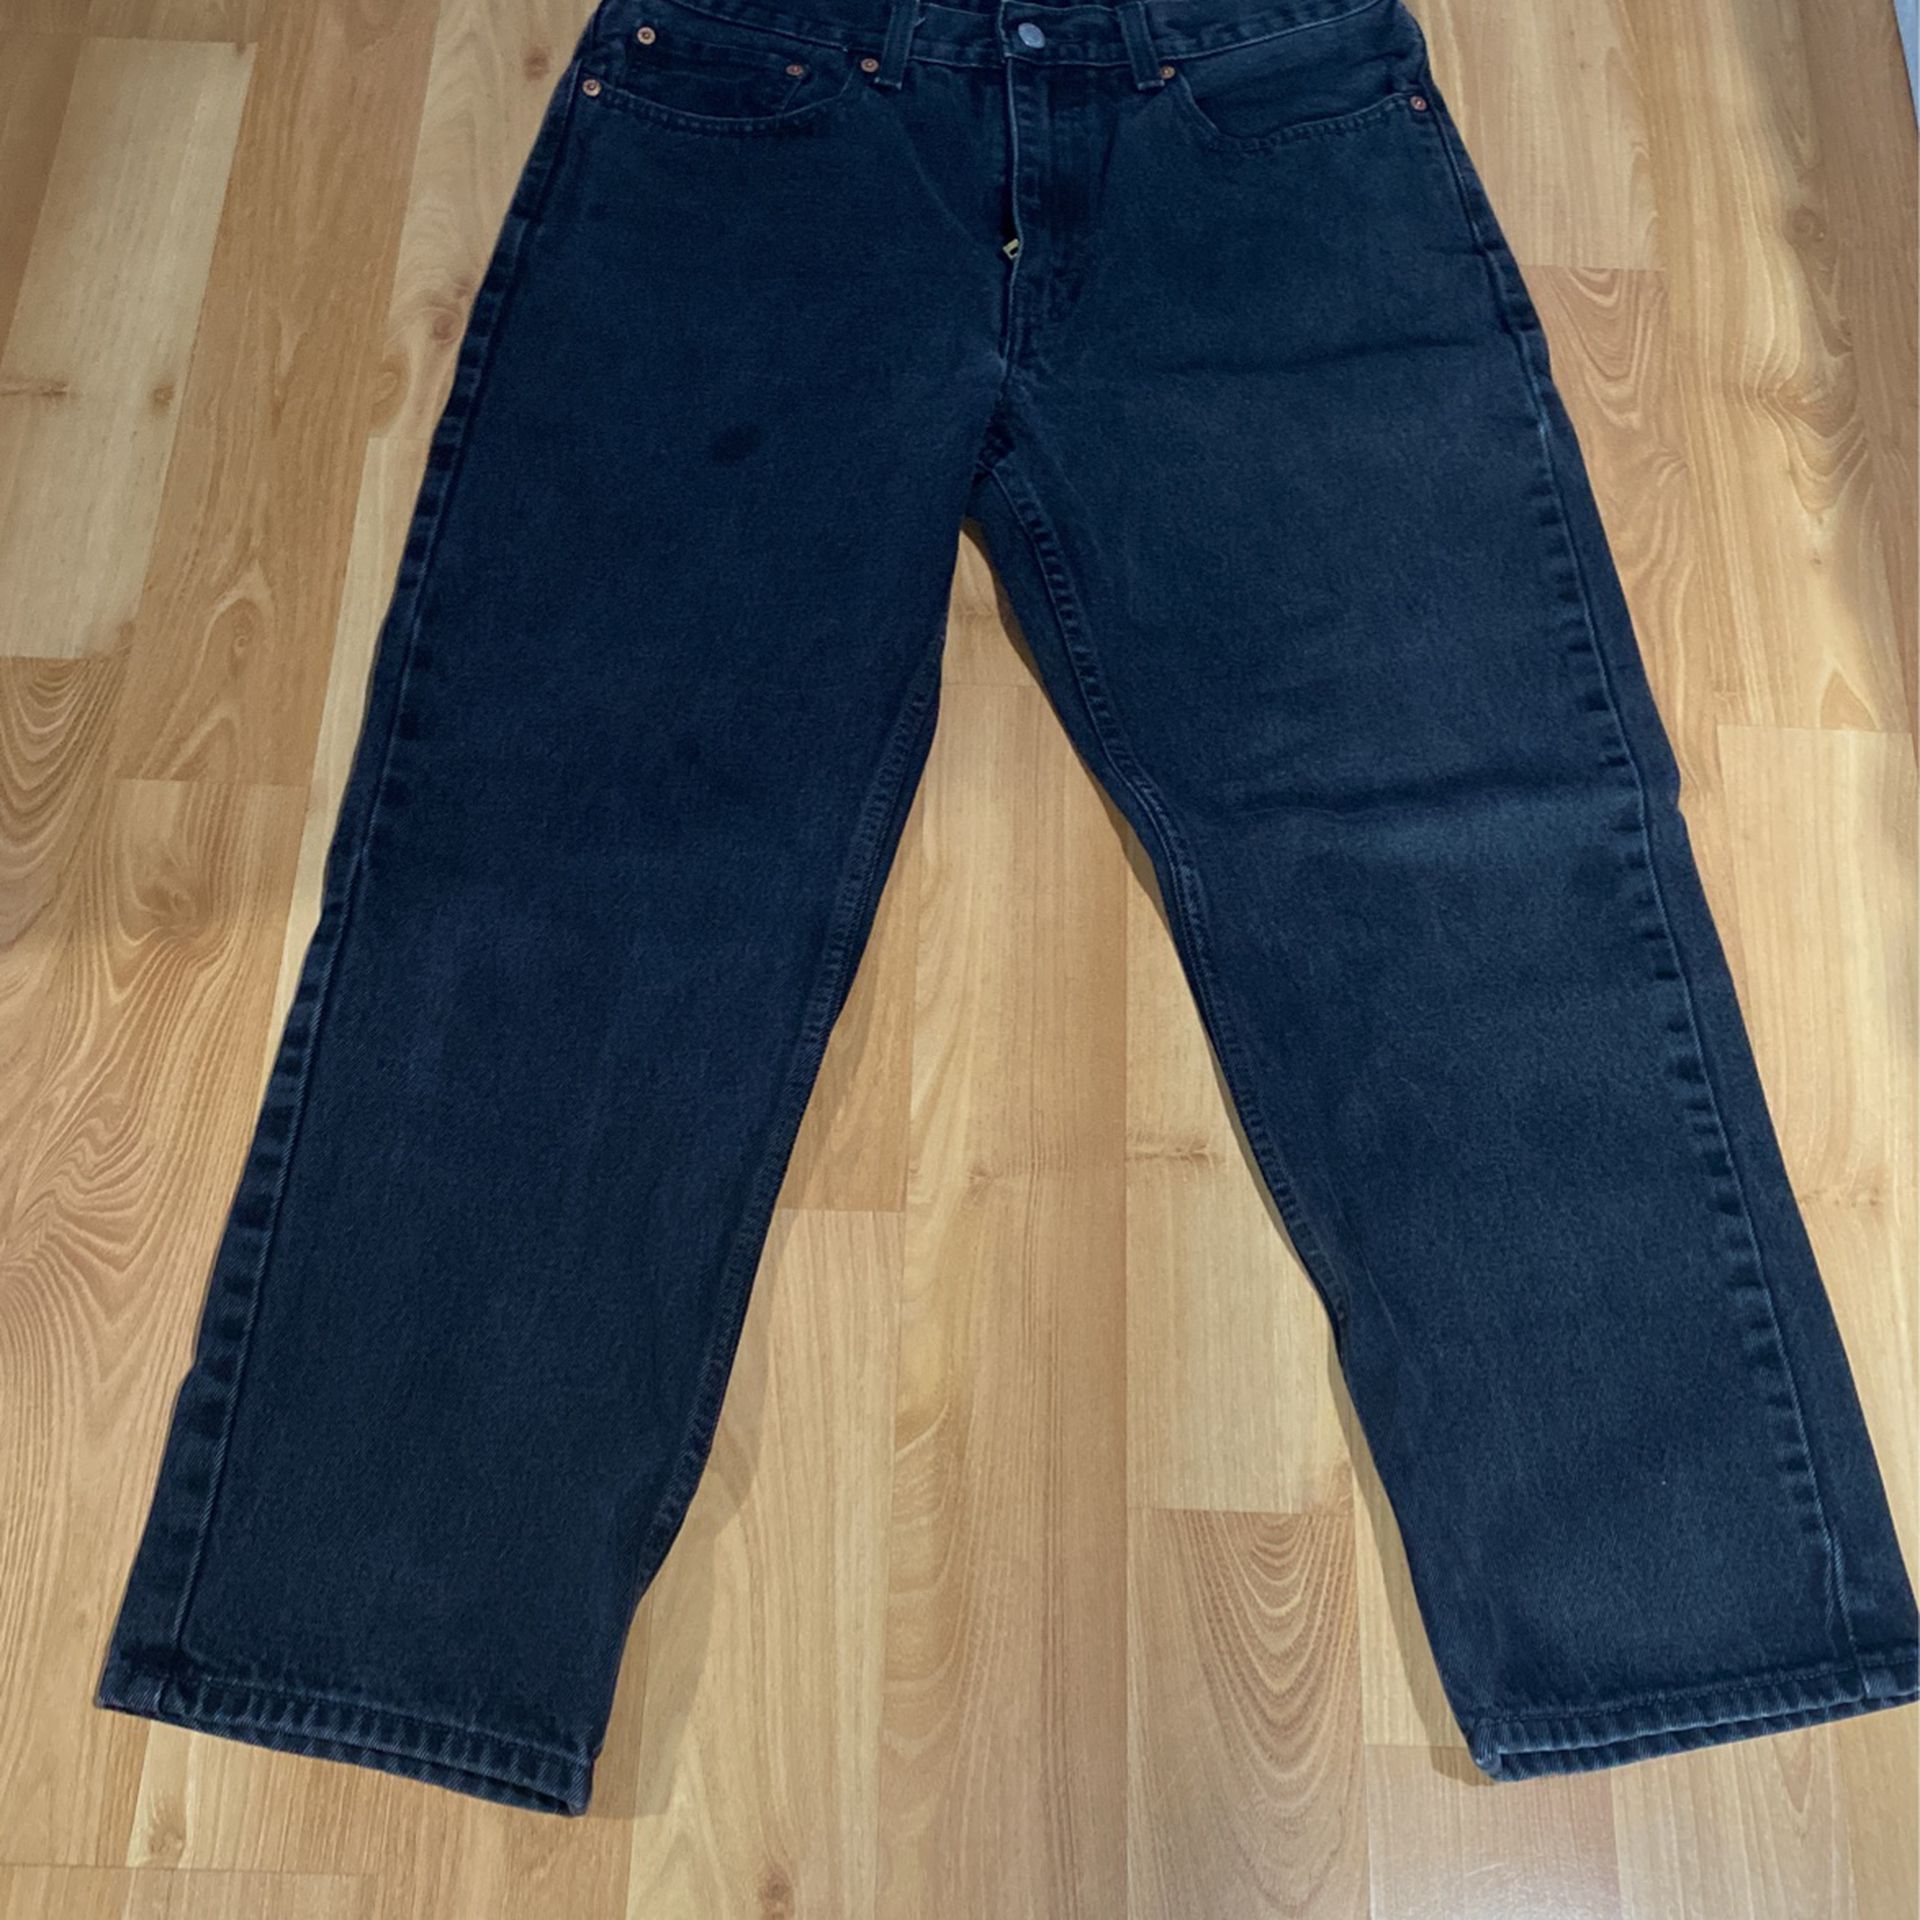 Levi Jeans 550